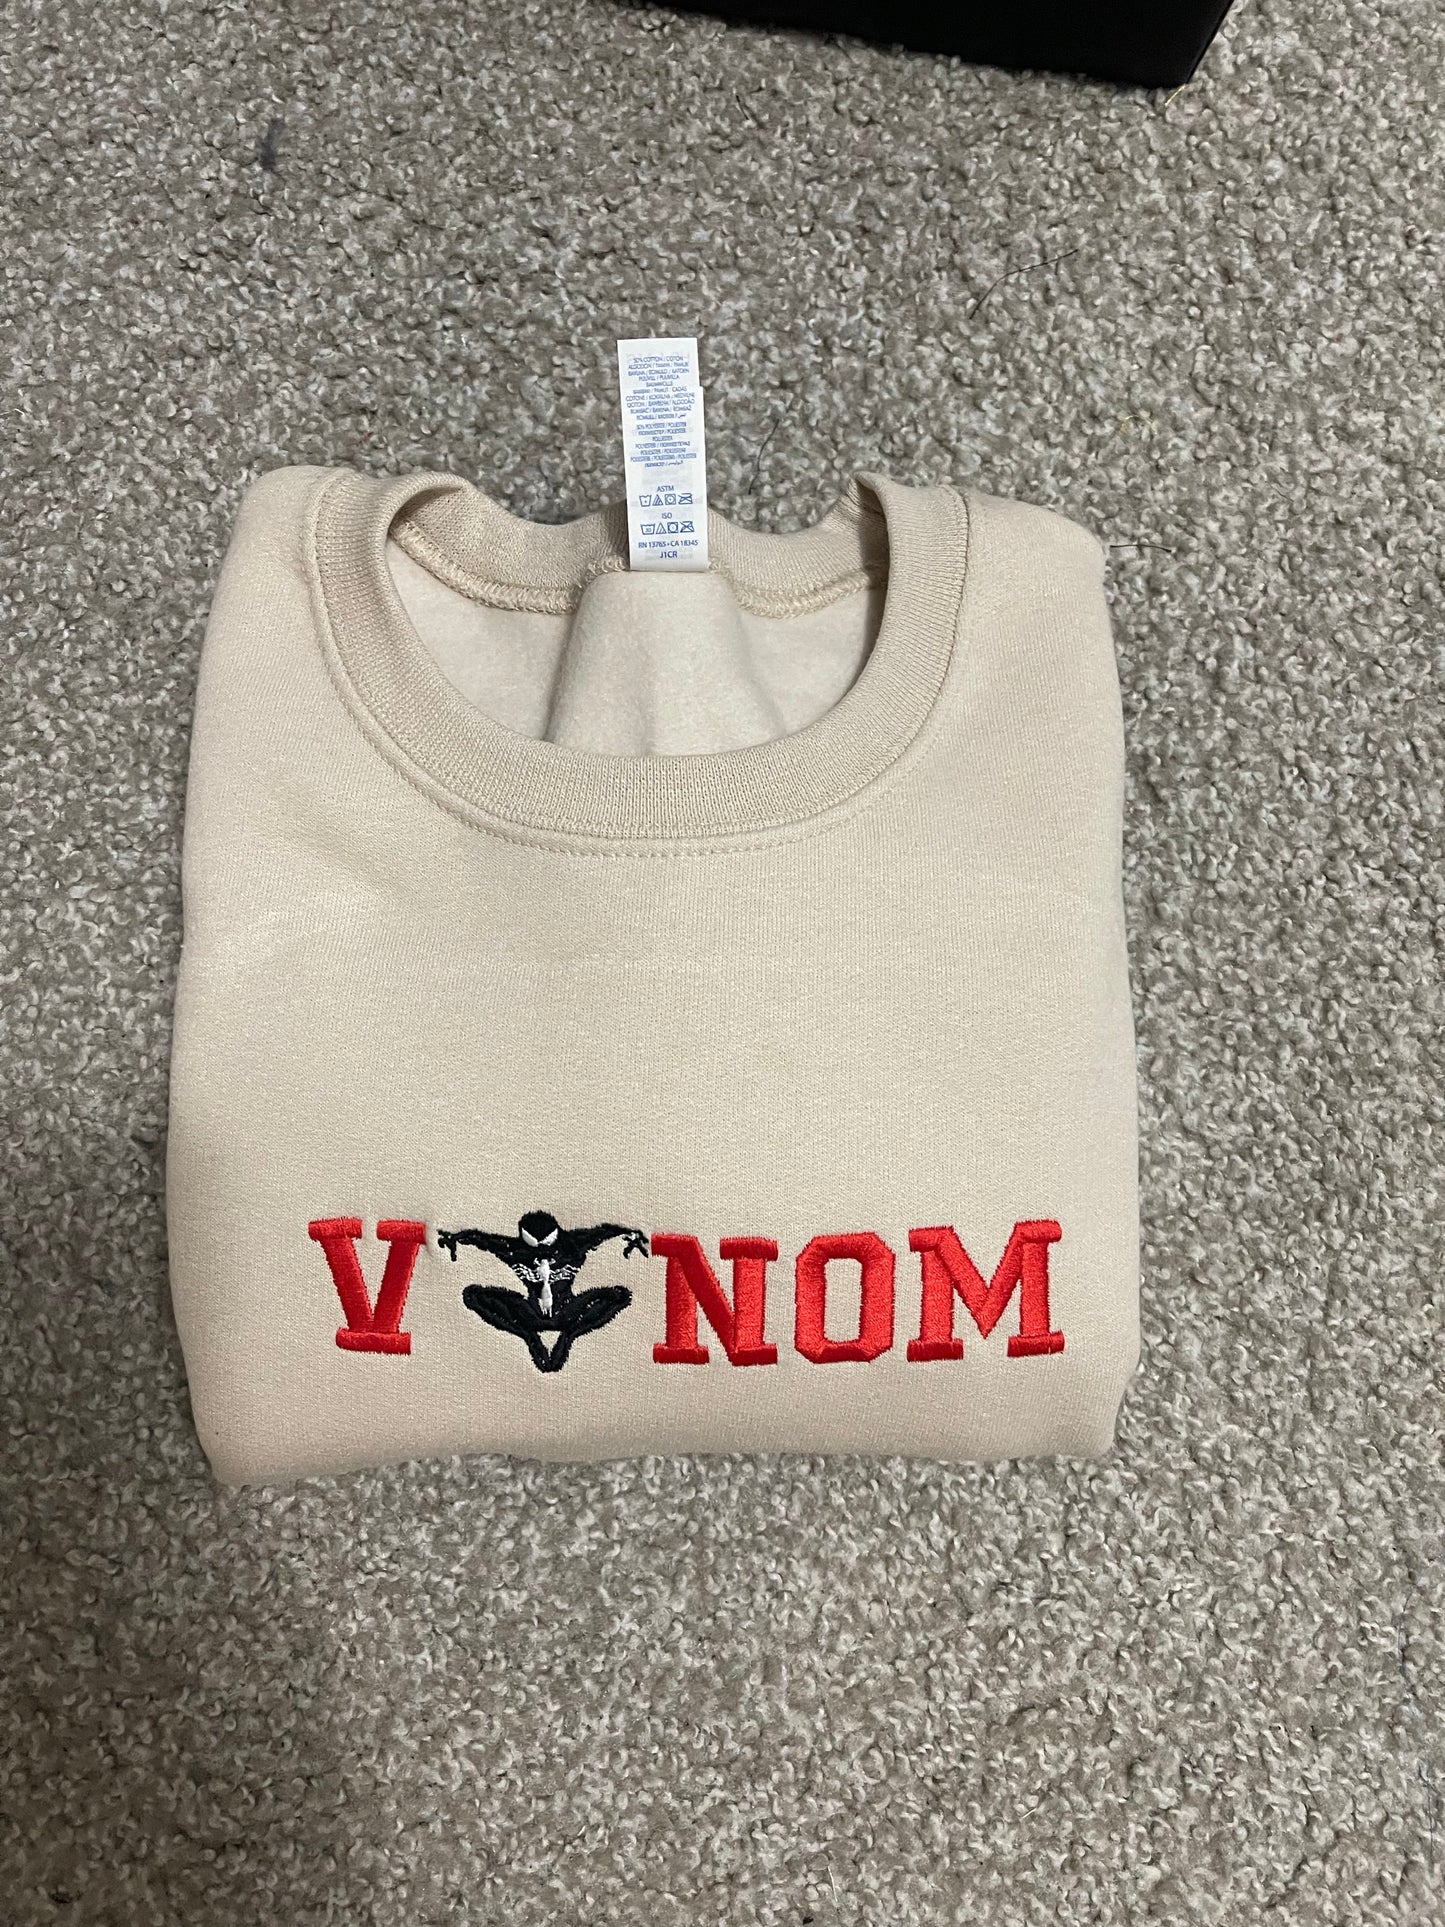 Venom x Spiderman Embroidered Sweatshirt